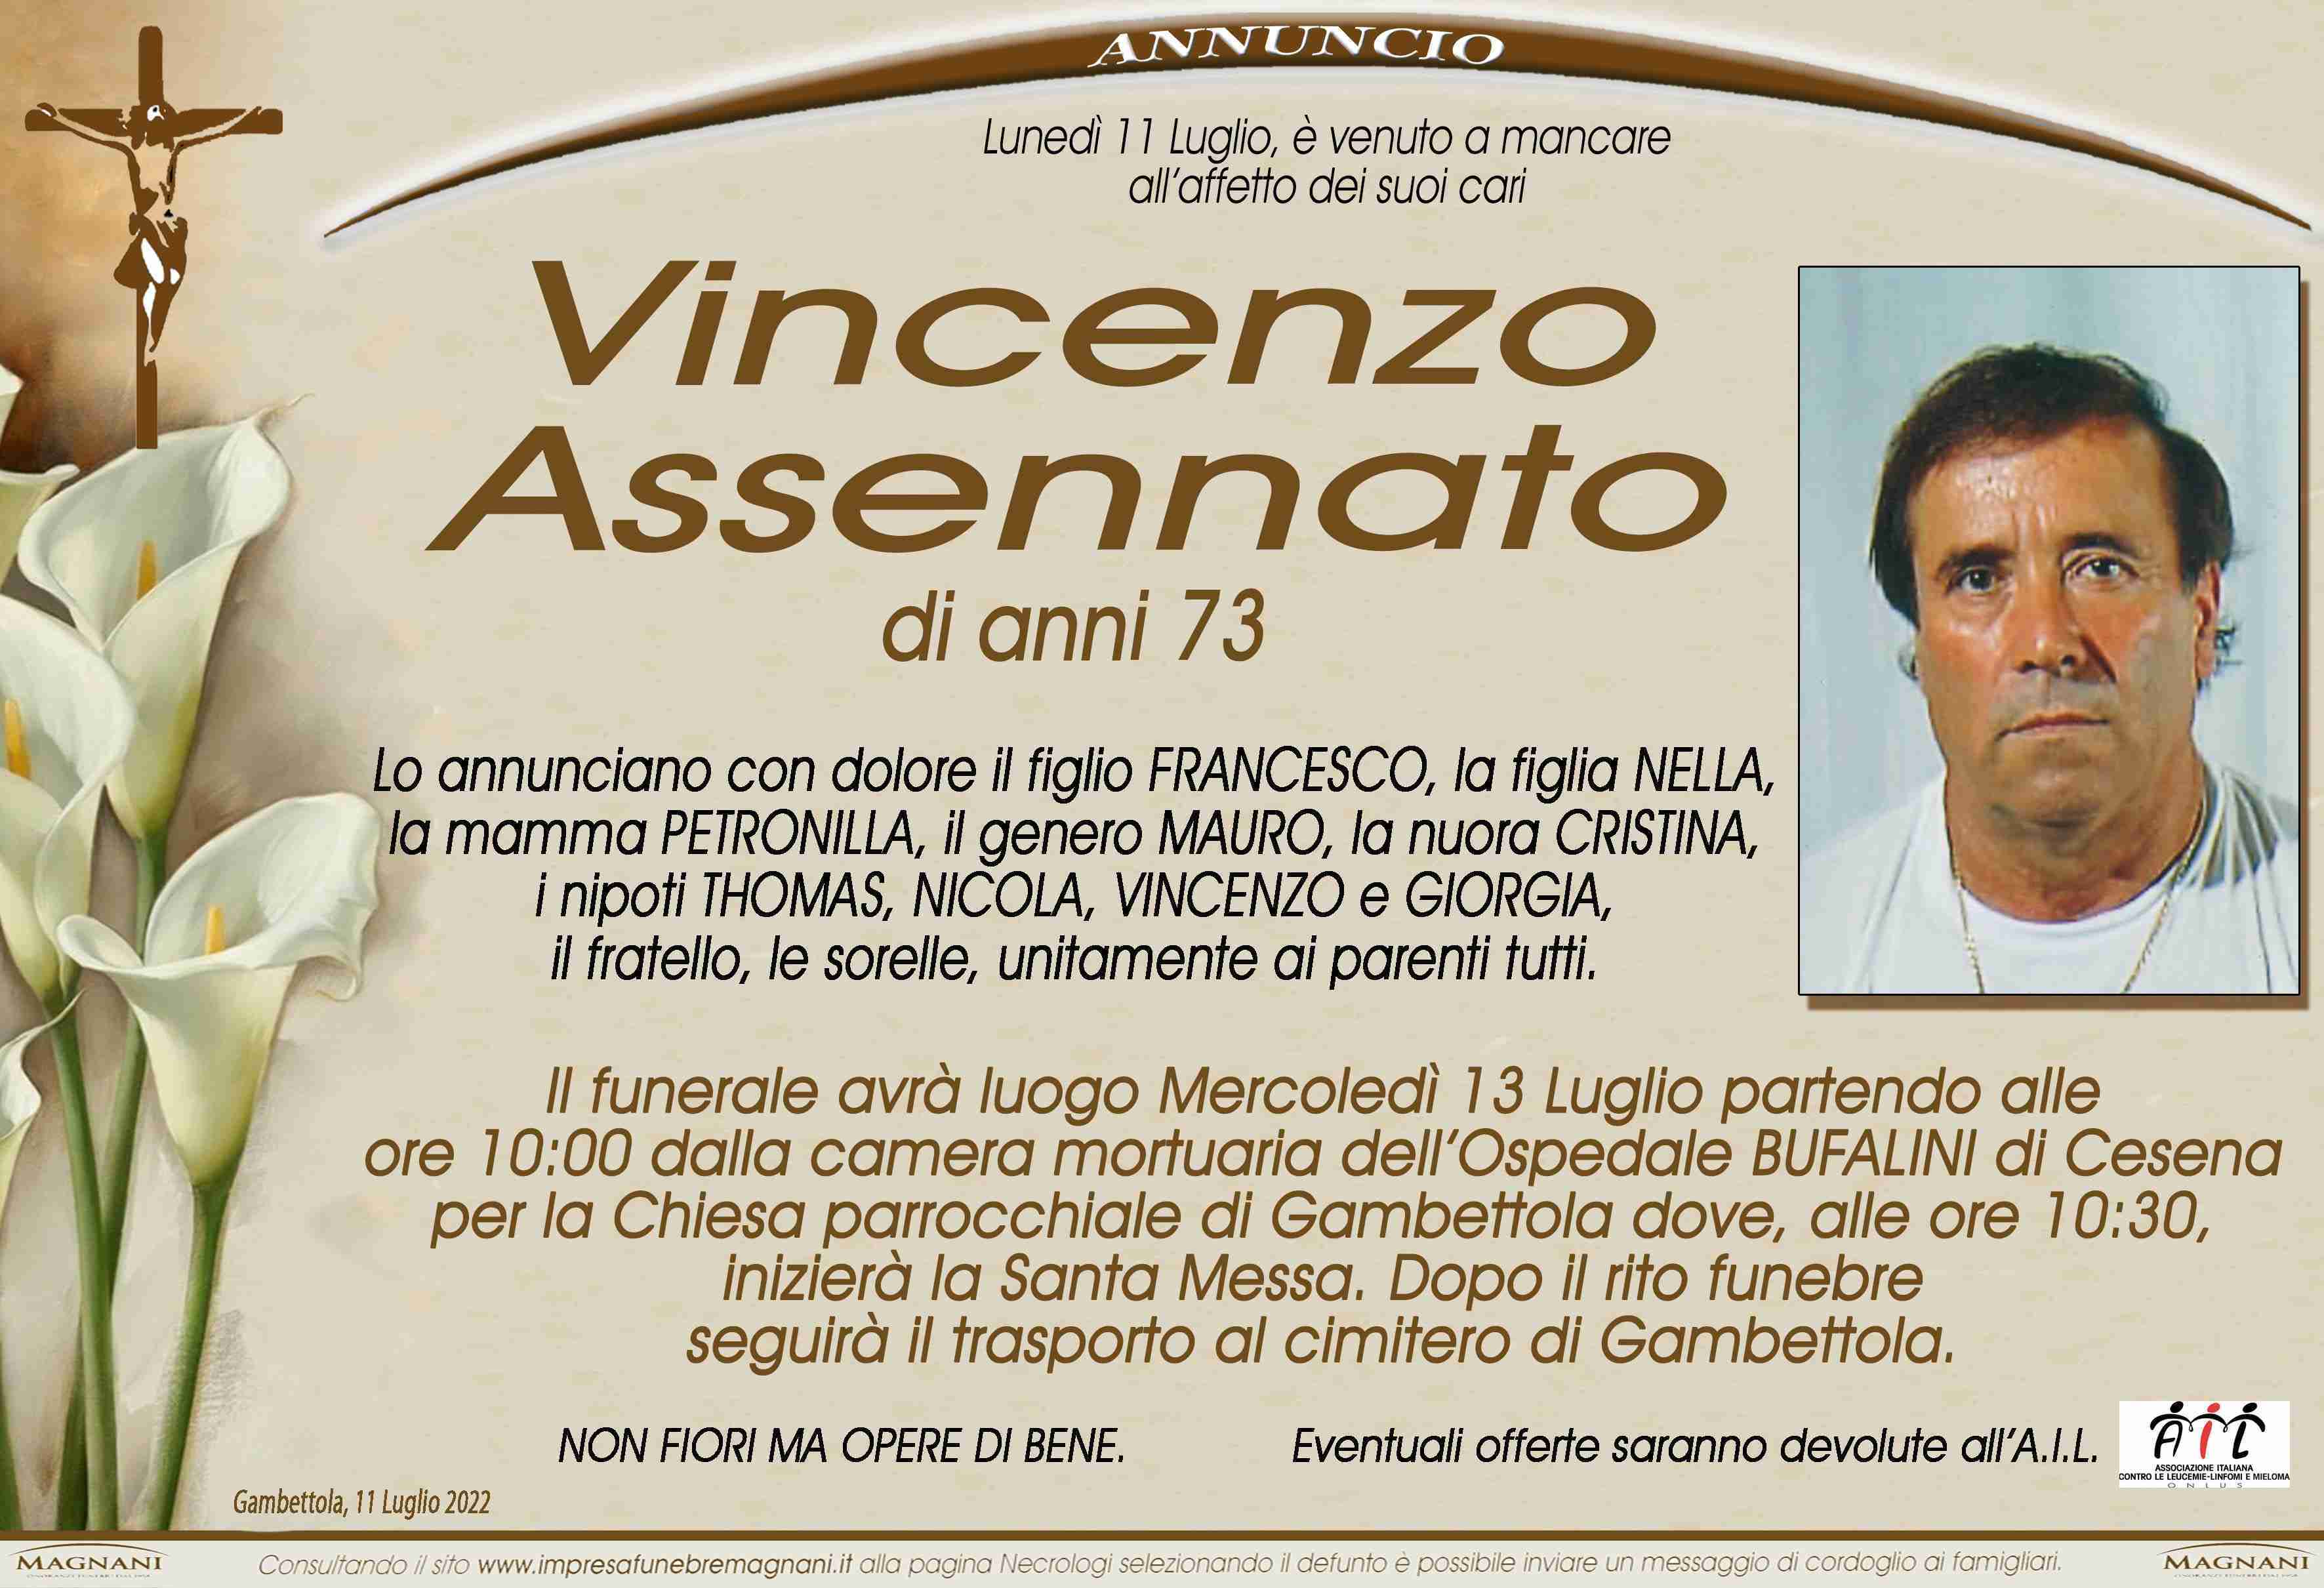 Vincenzo Assennato